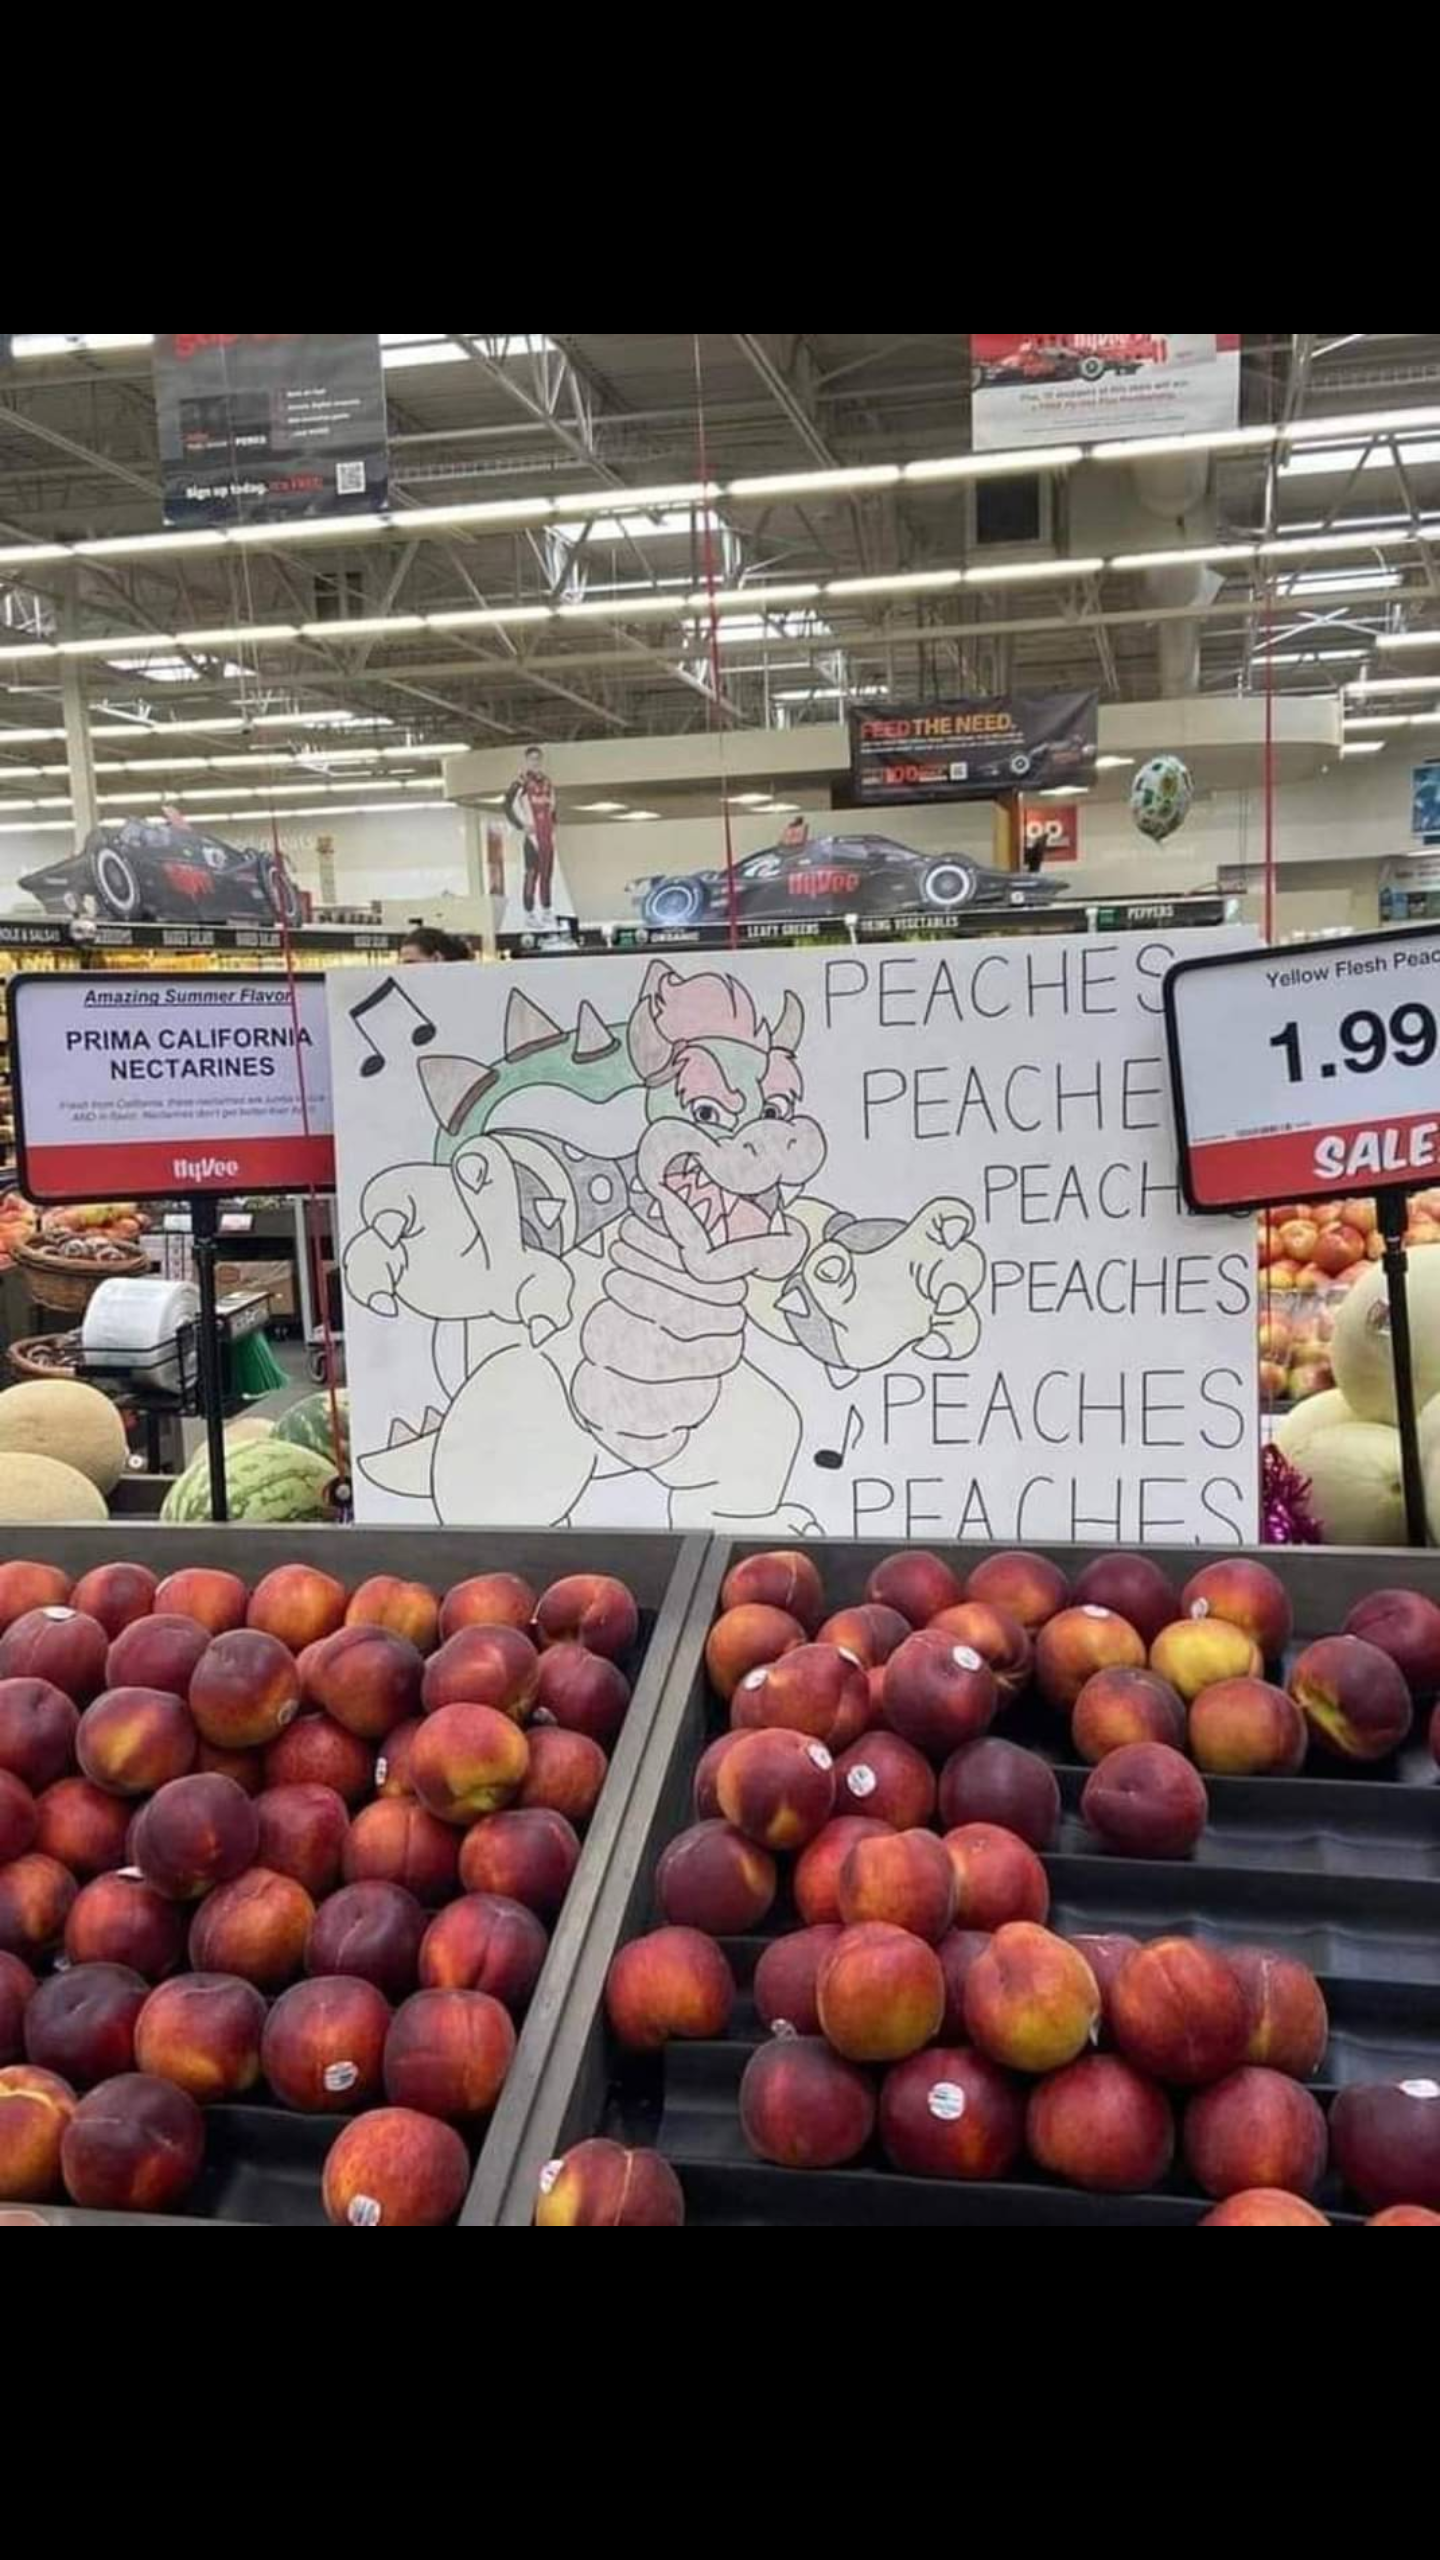 Peaches, Peaches, Peaches...